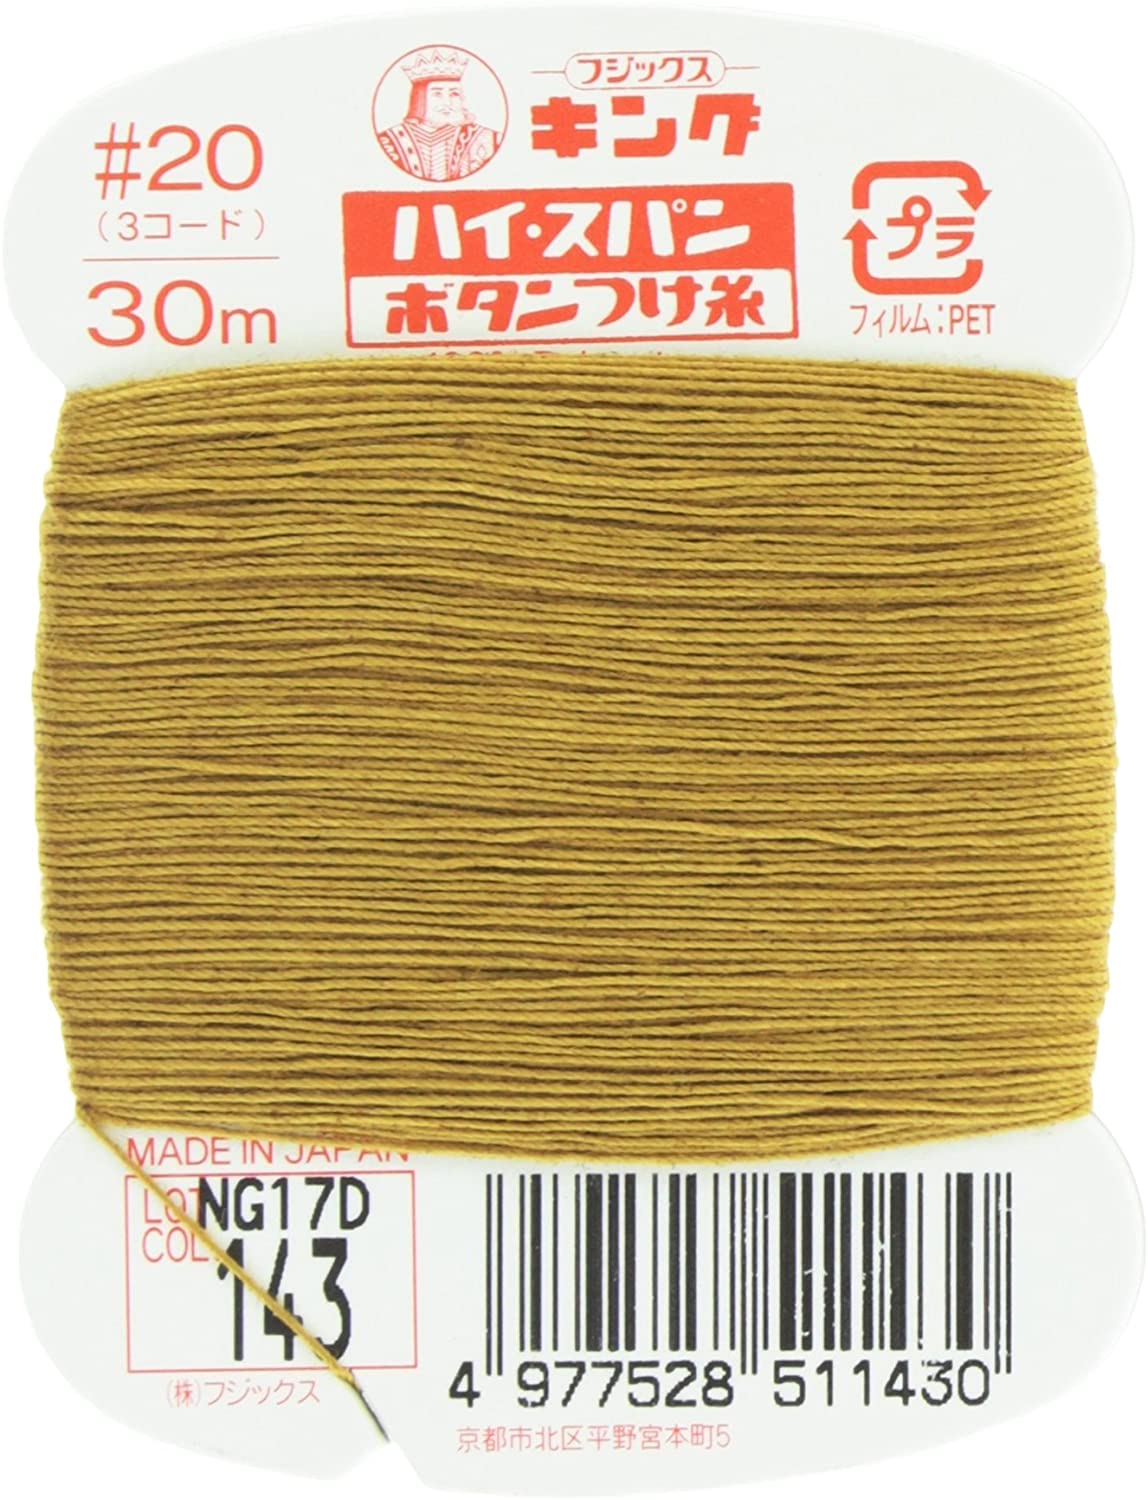 FK51-143 ハイスパンボタンつけ糸 #20 30m巻 (枚)